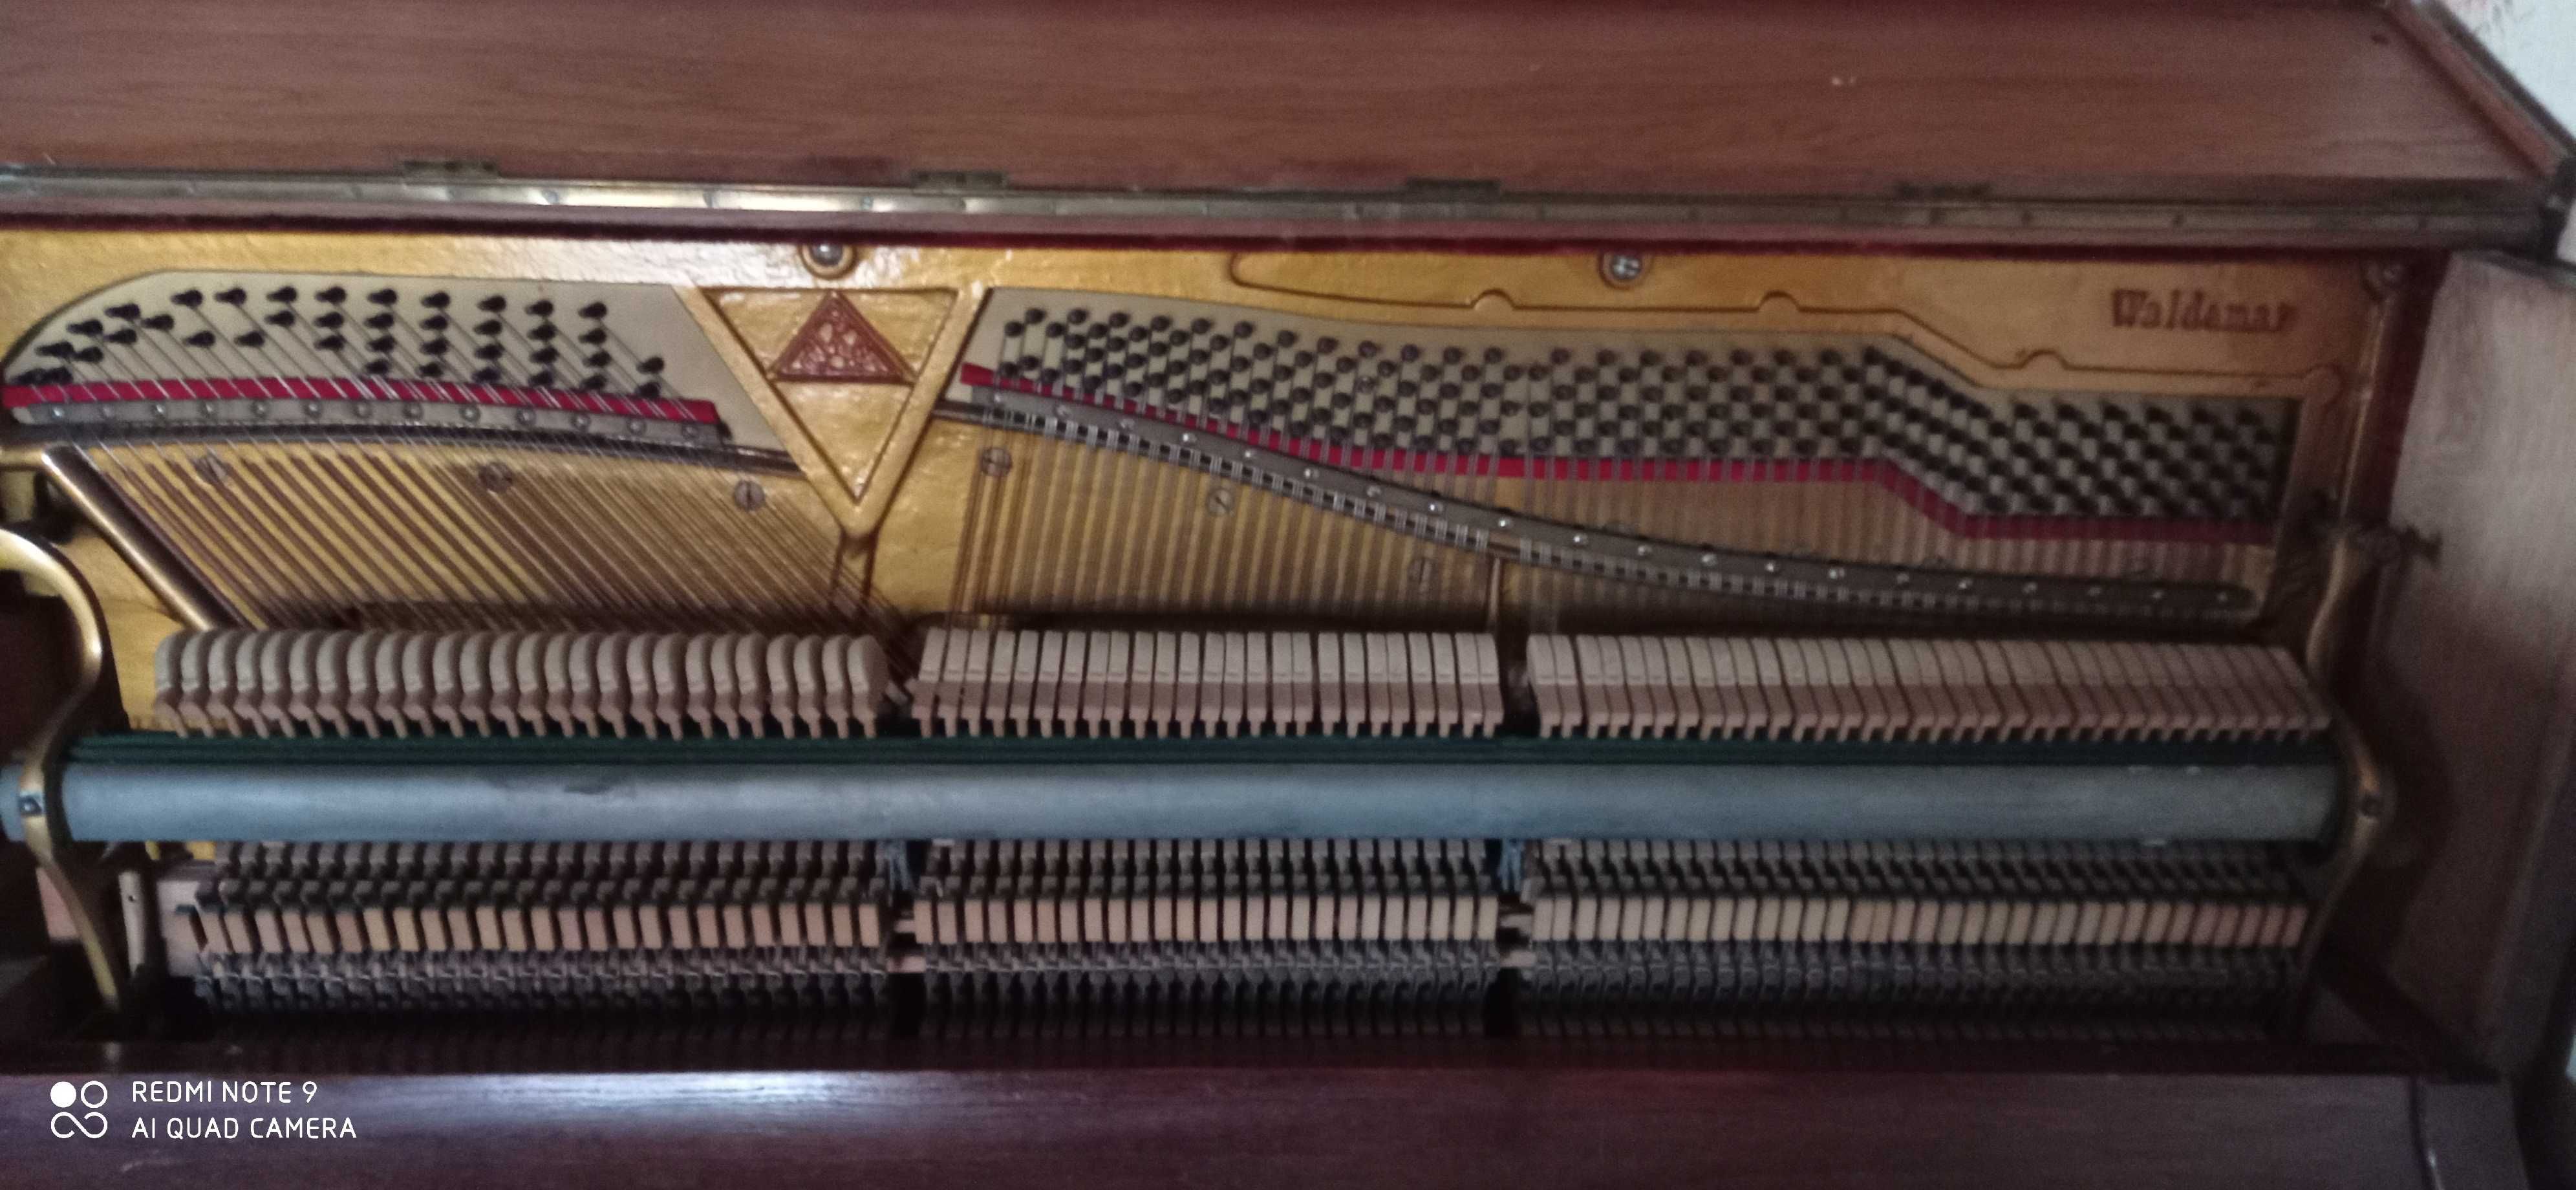 Продам фортепиано Waldemar 1856 года